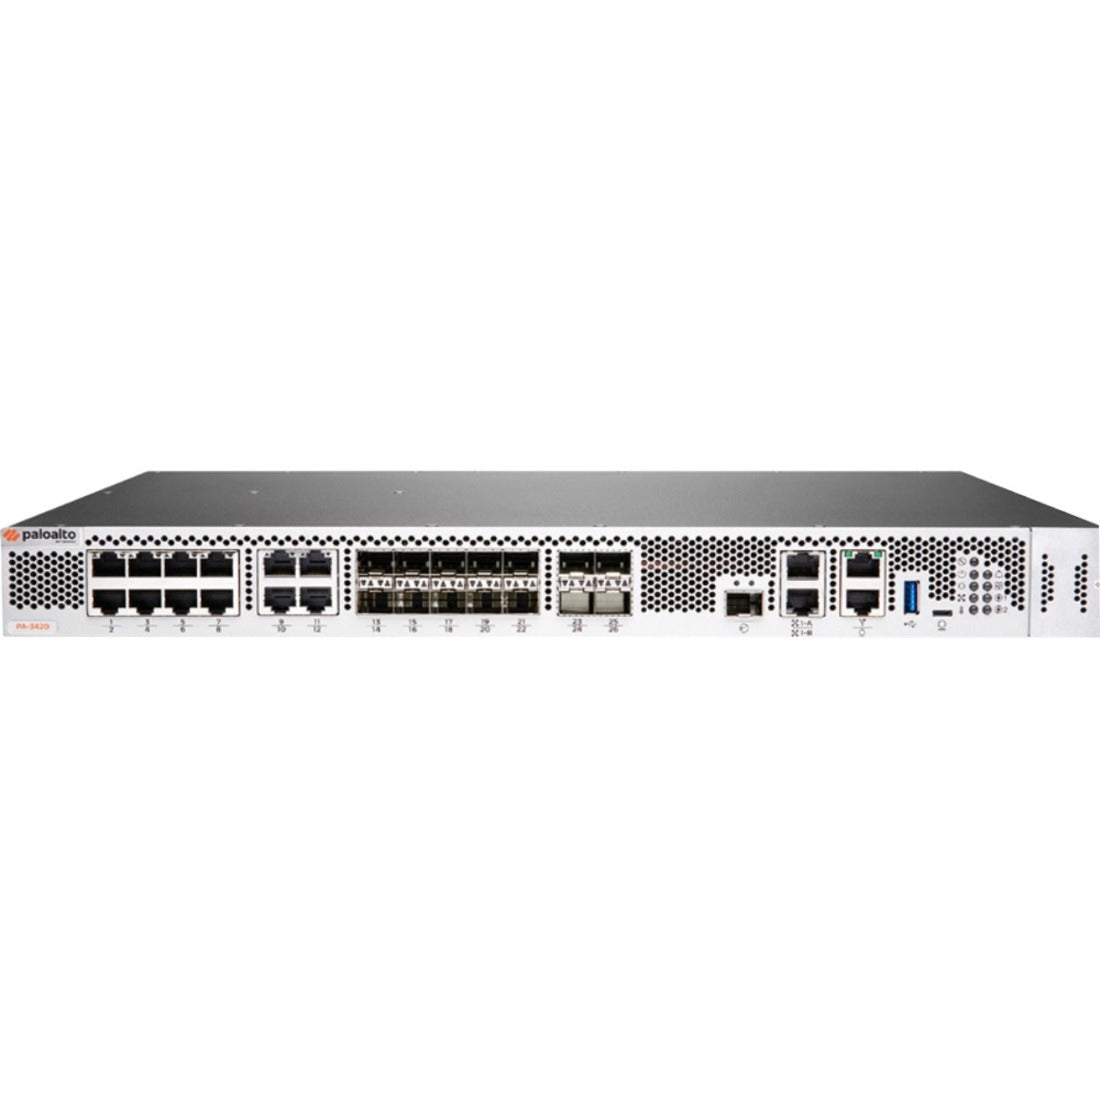 Palo Alto PA-3420 Network Security/Firewall Appliance - PAN-PA-3420